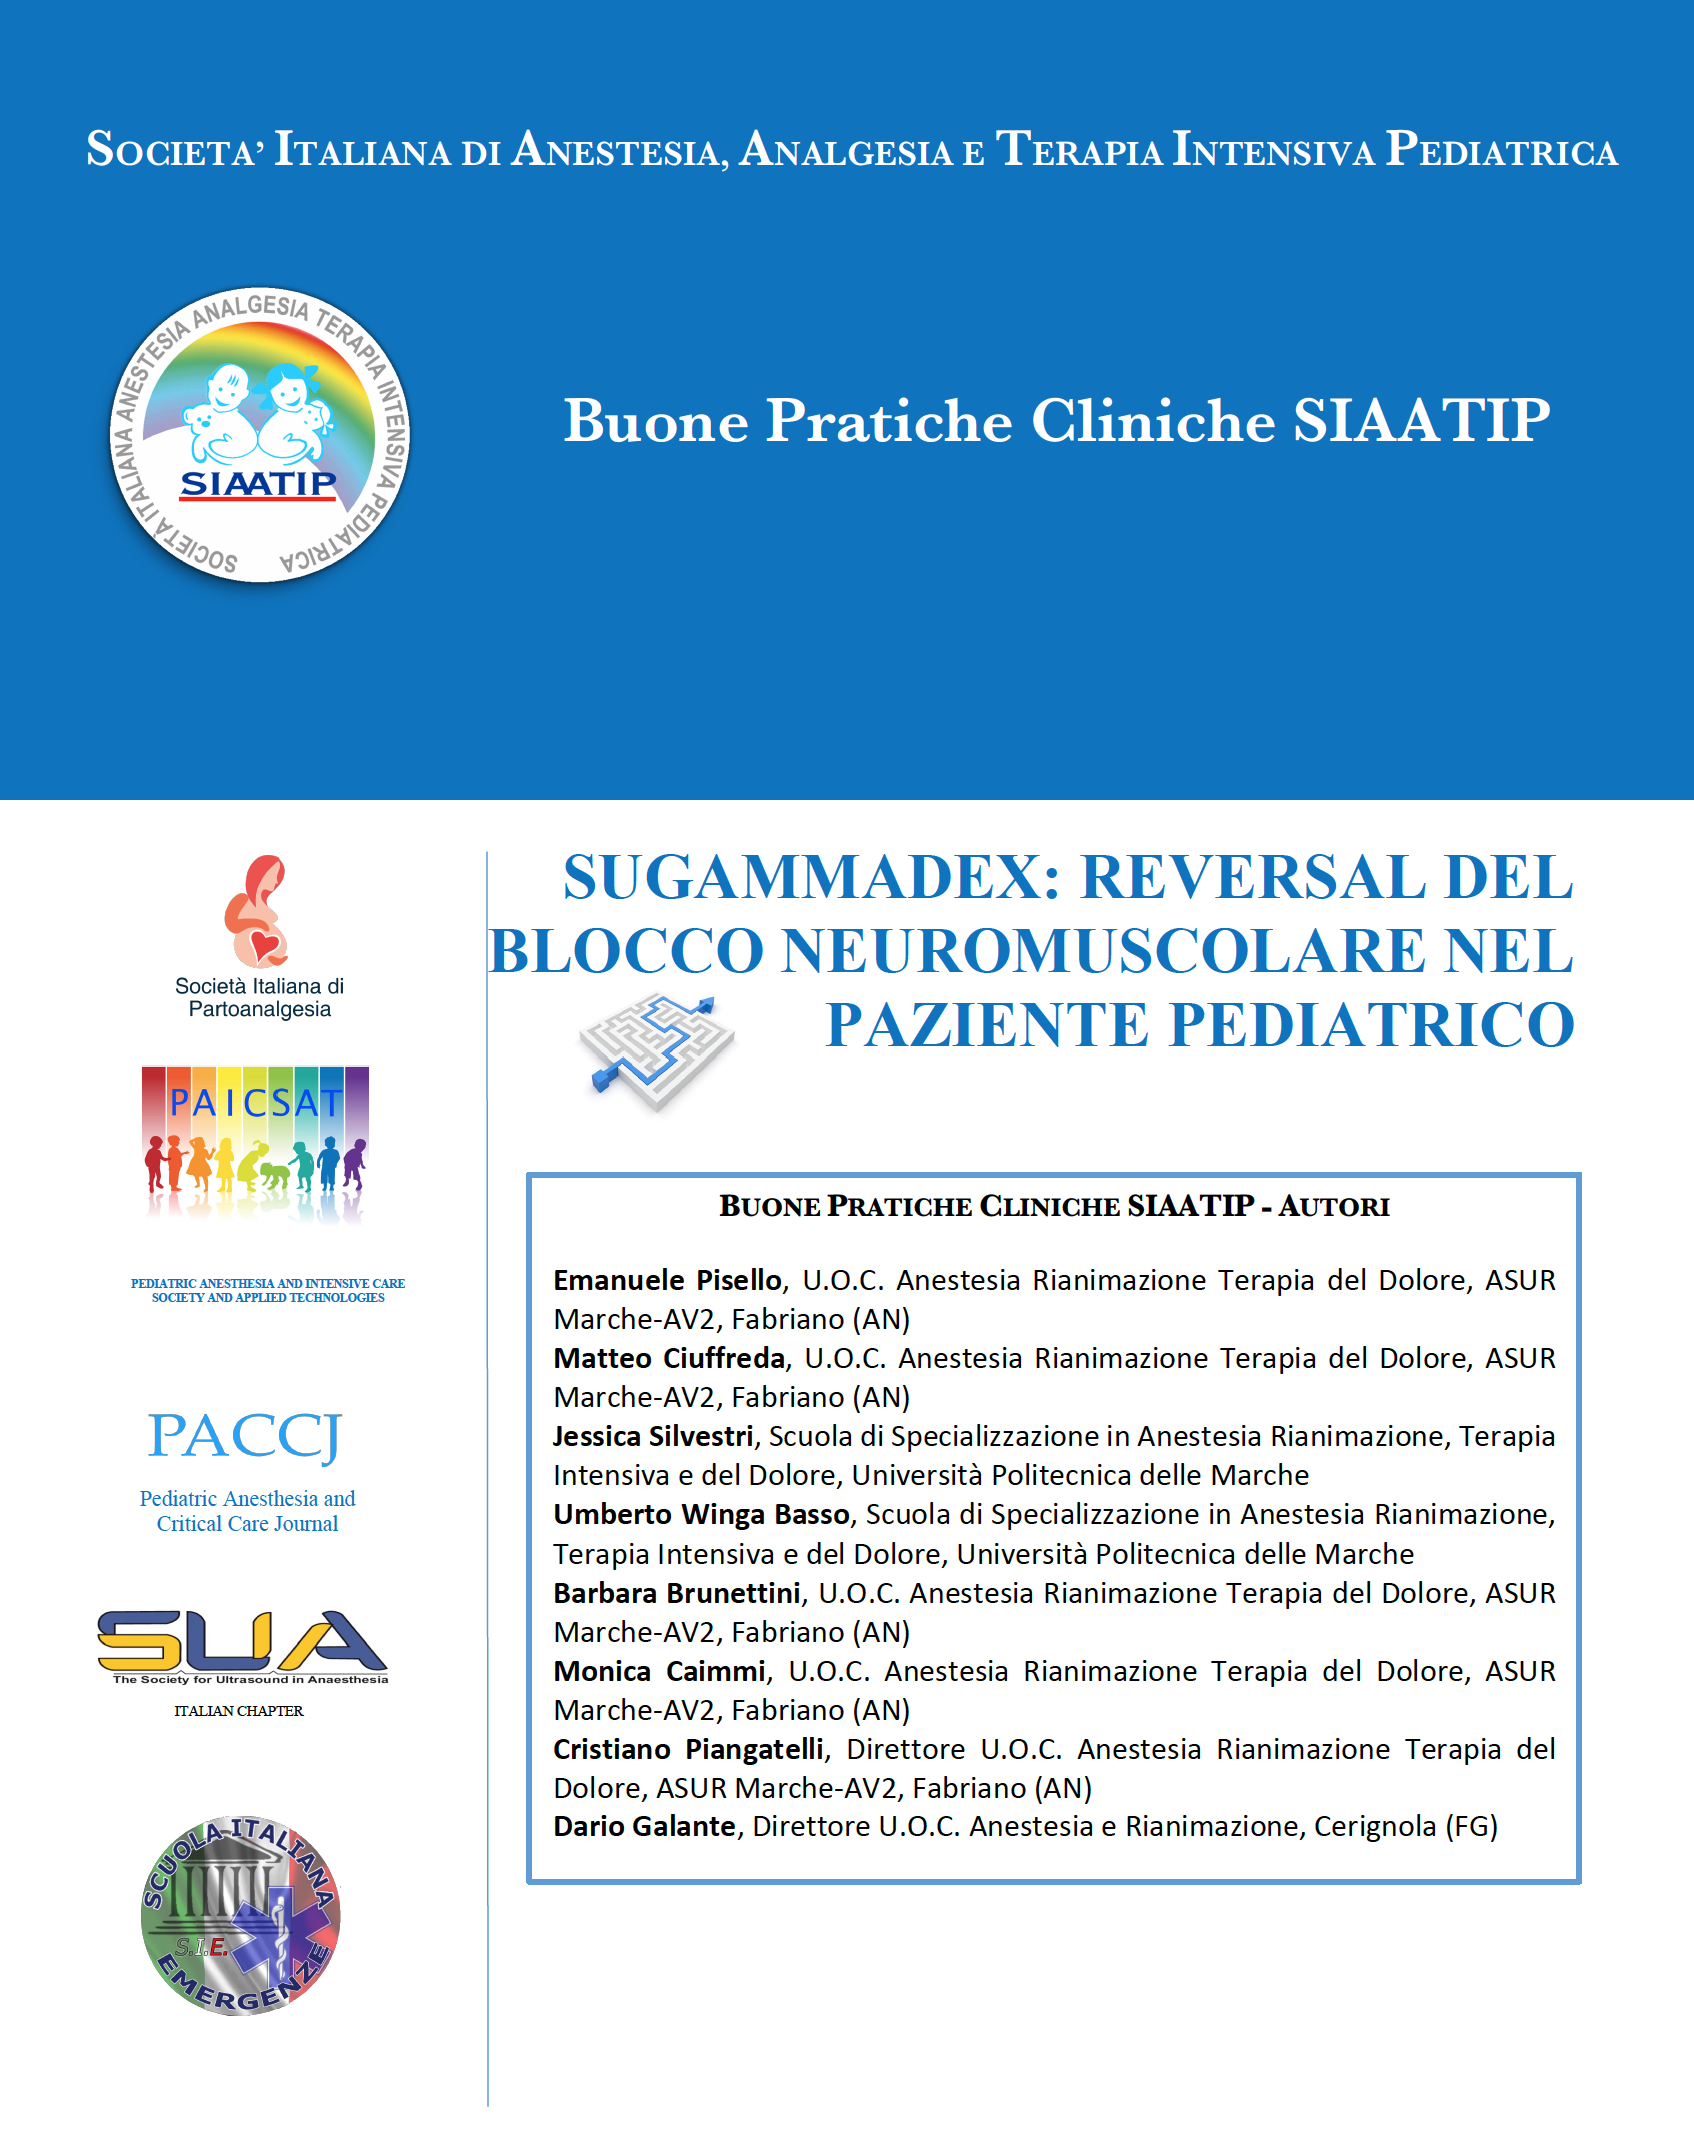 BPC Sugammadex pediatrica